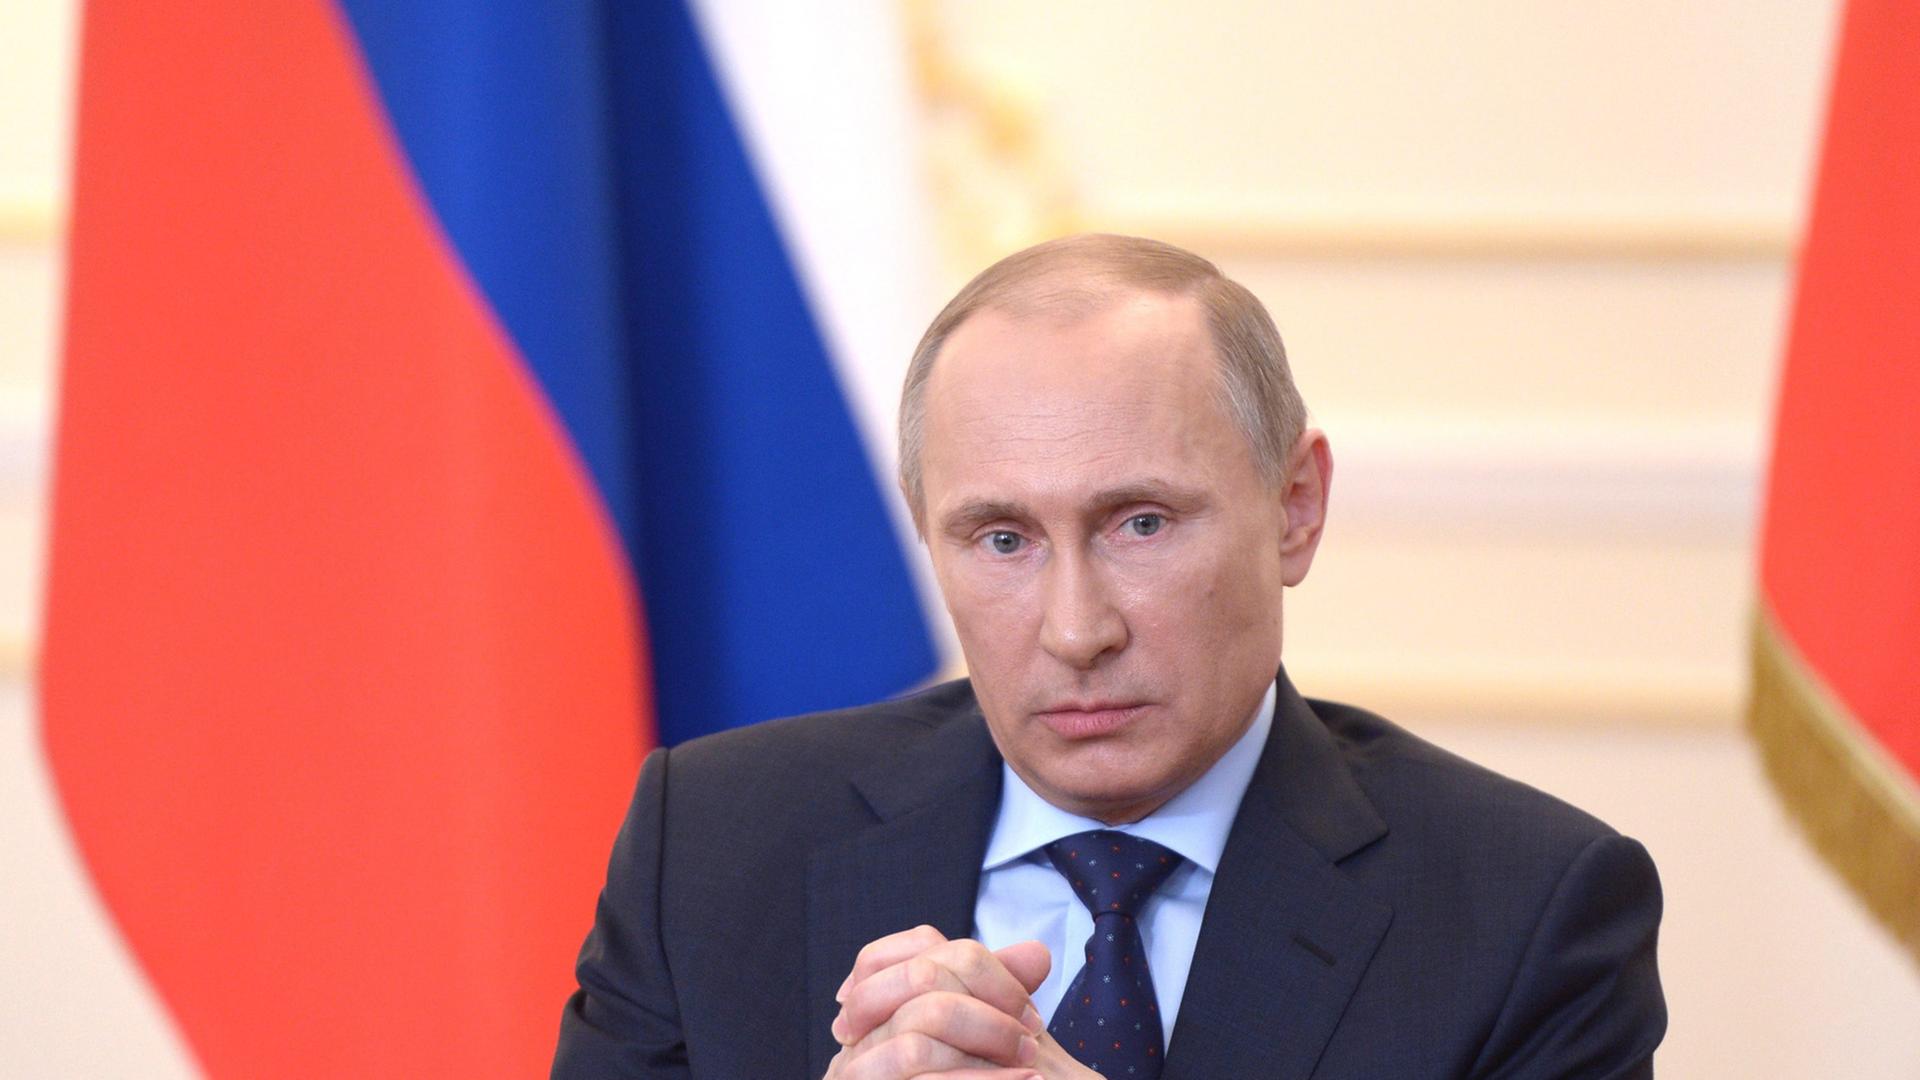 Wladimir Putin bei seiner Pressekonferenz in Moskau.